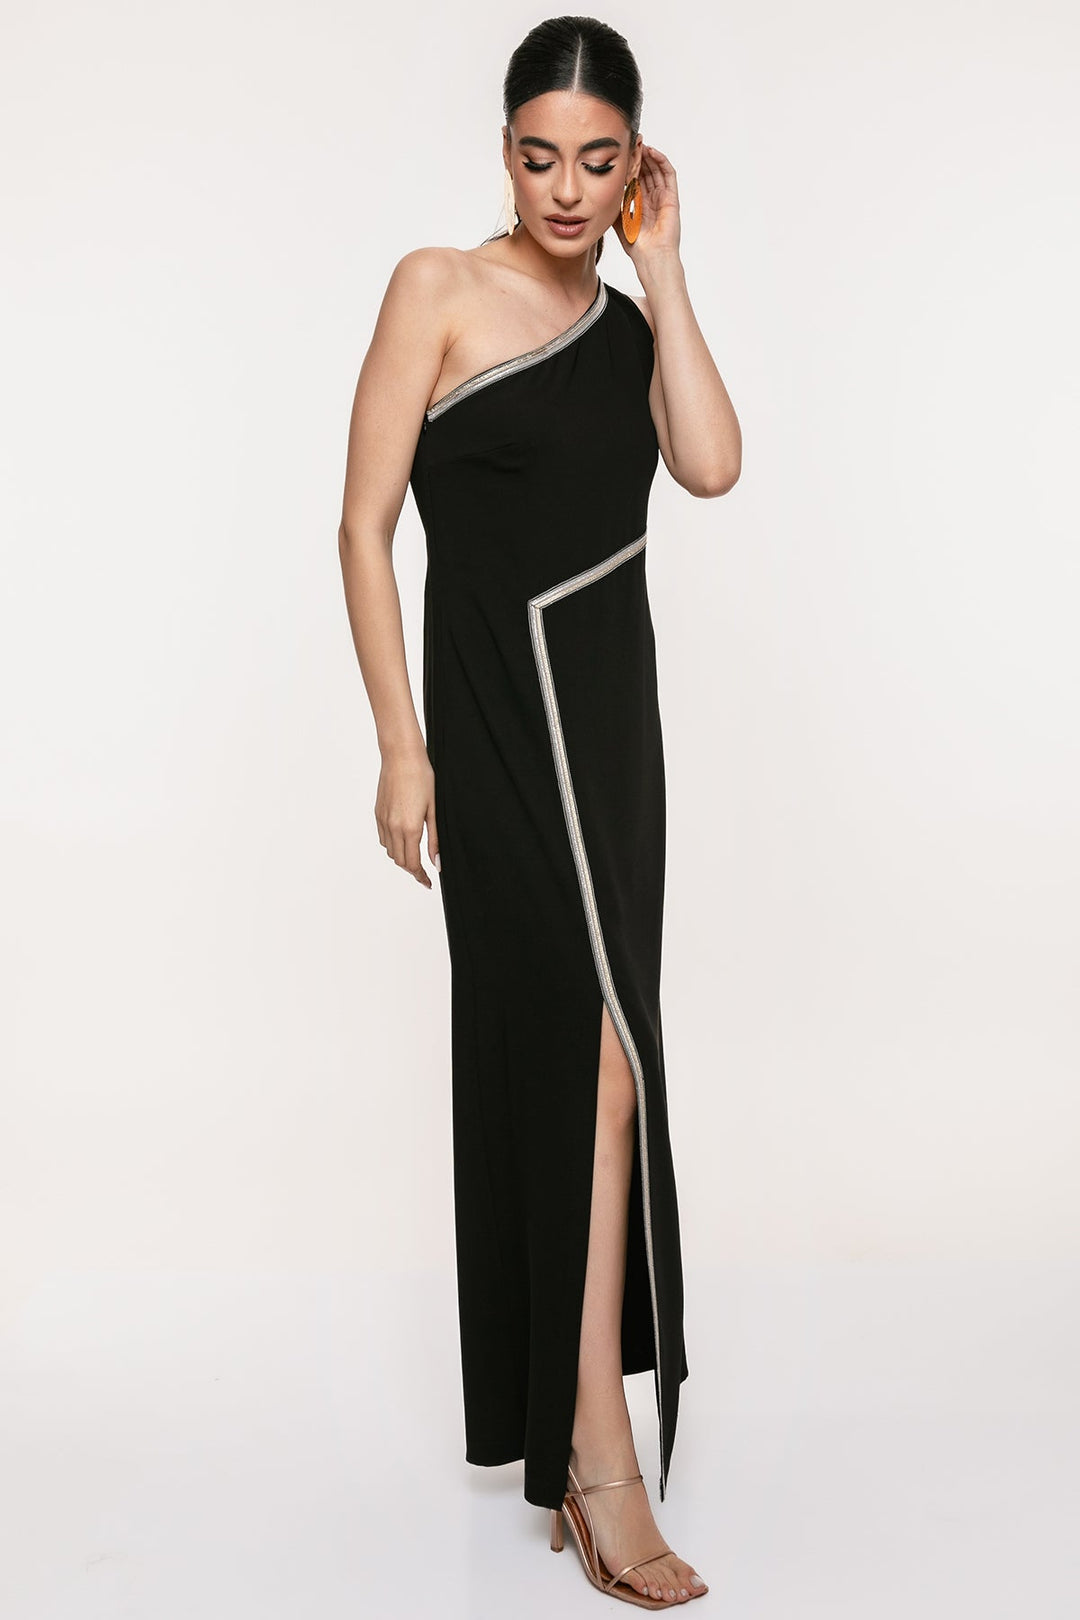 Φόρεμα μάξι με έναν ώμο και σκίσιμο Coelia - A Collection Boutique